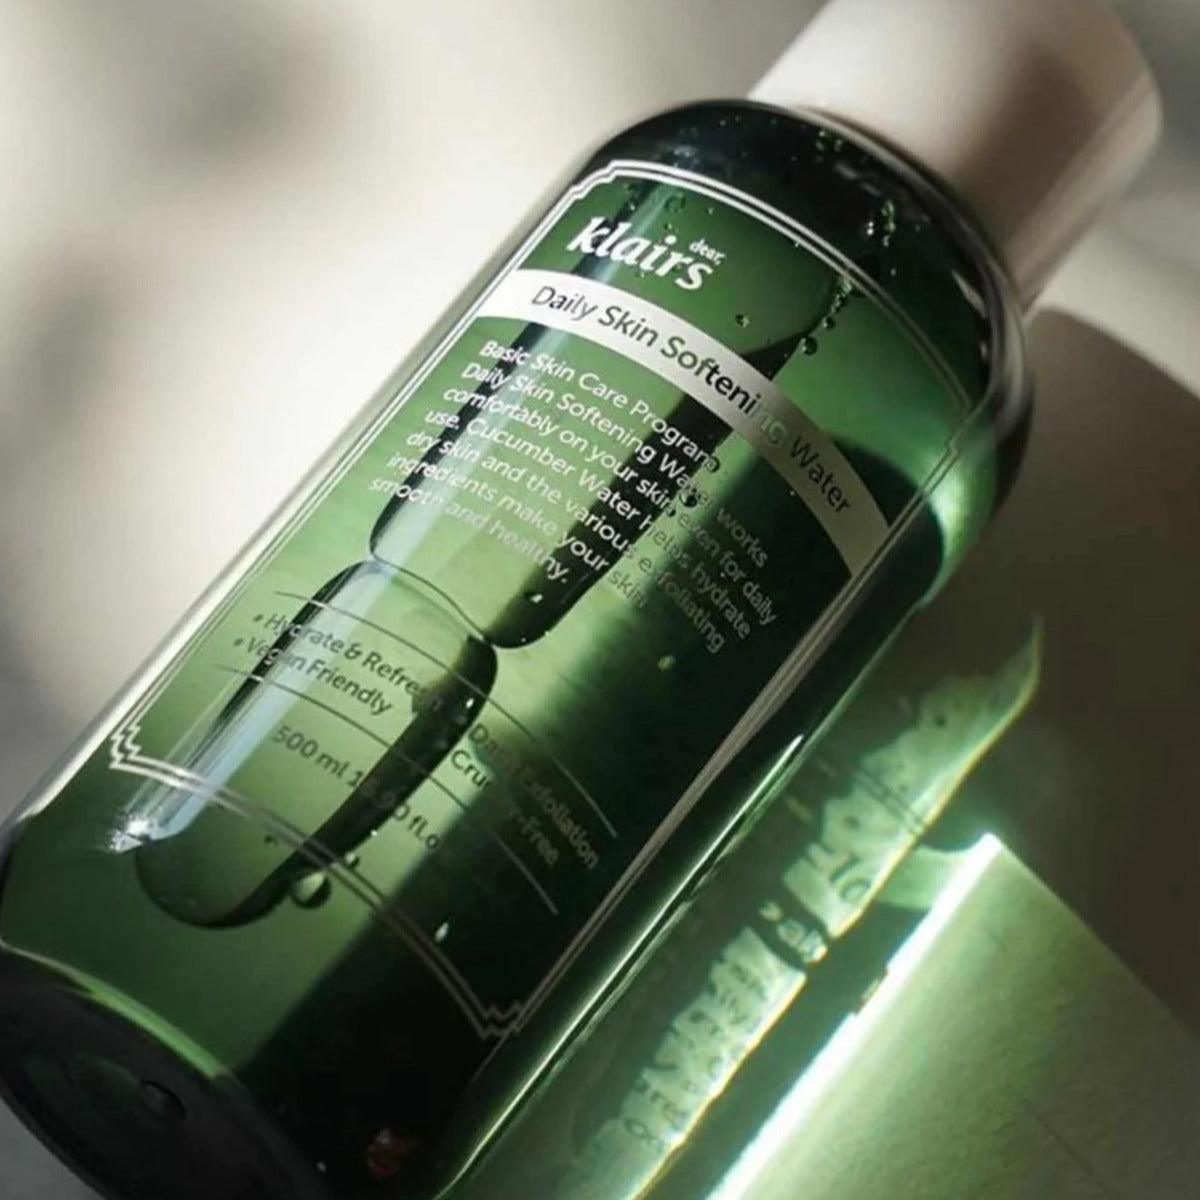 Daily Skin Softening Water - 500 ml - K-Beauty Arabia